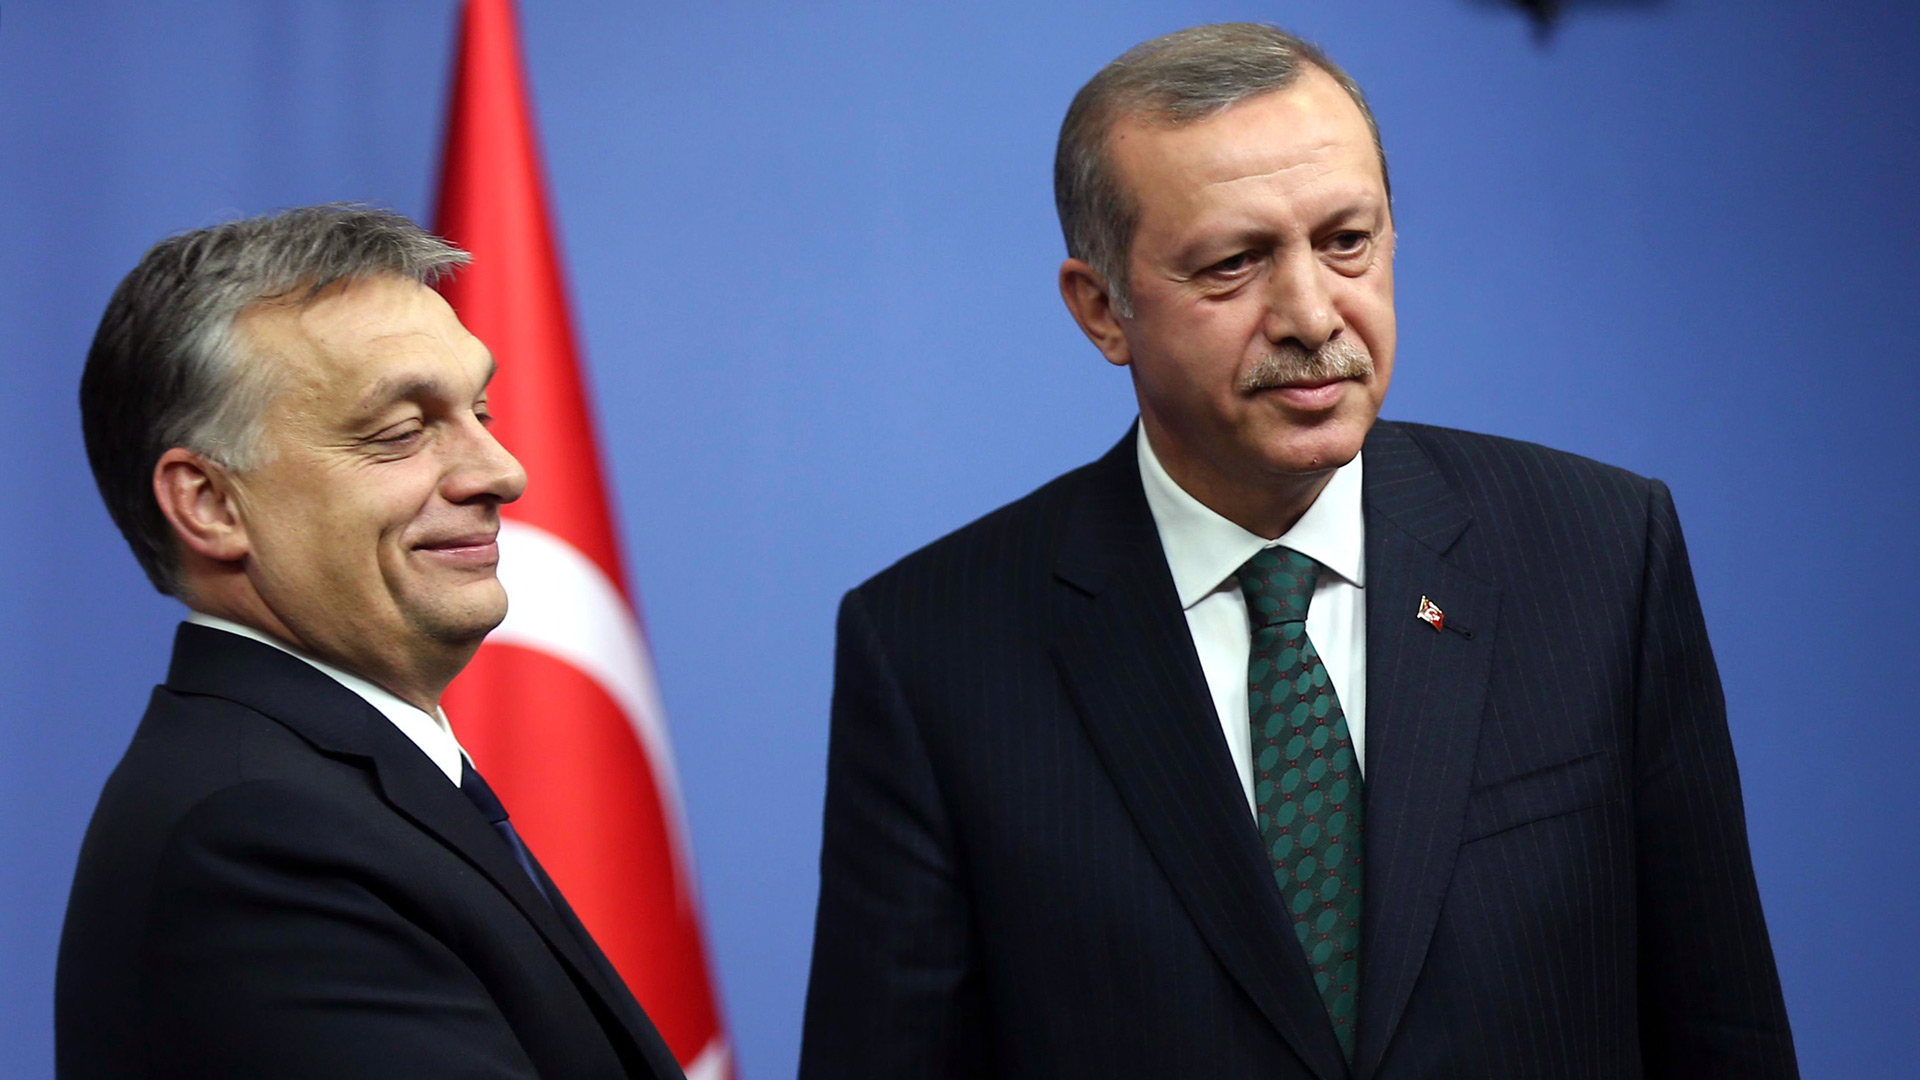 Még számolják a szavazatokat Törökországban, de Orbán Viktor már gratulált Erdogannak